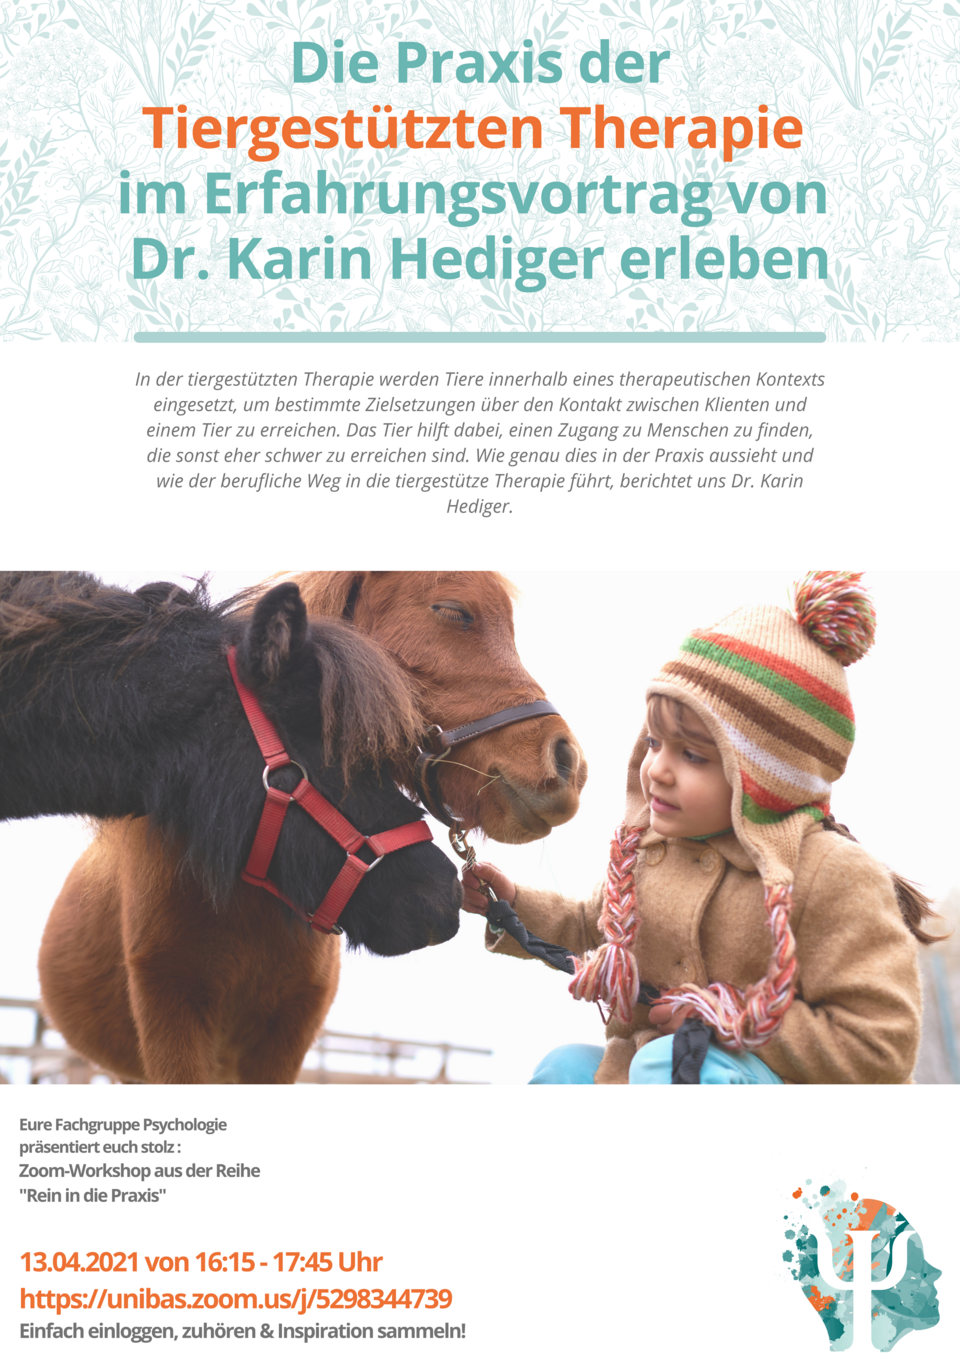 Dr. Karin Hediger erleben